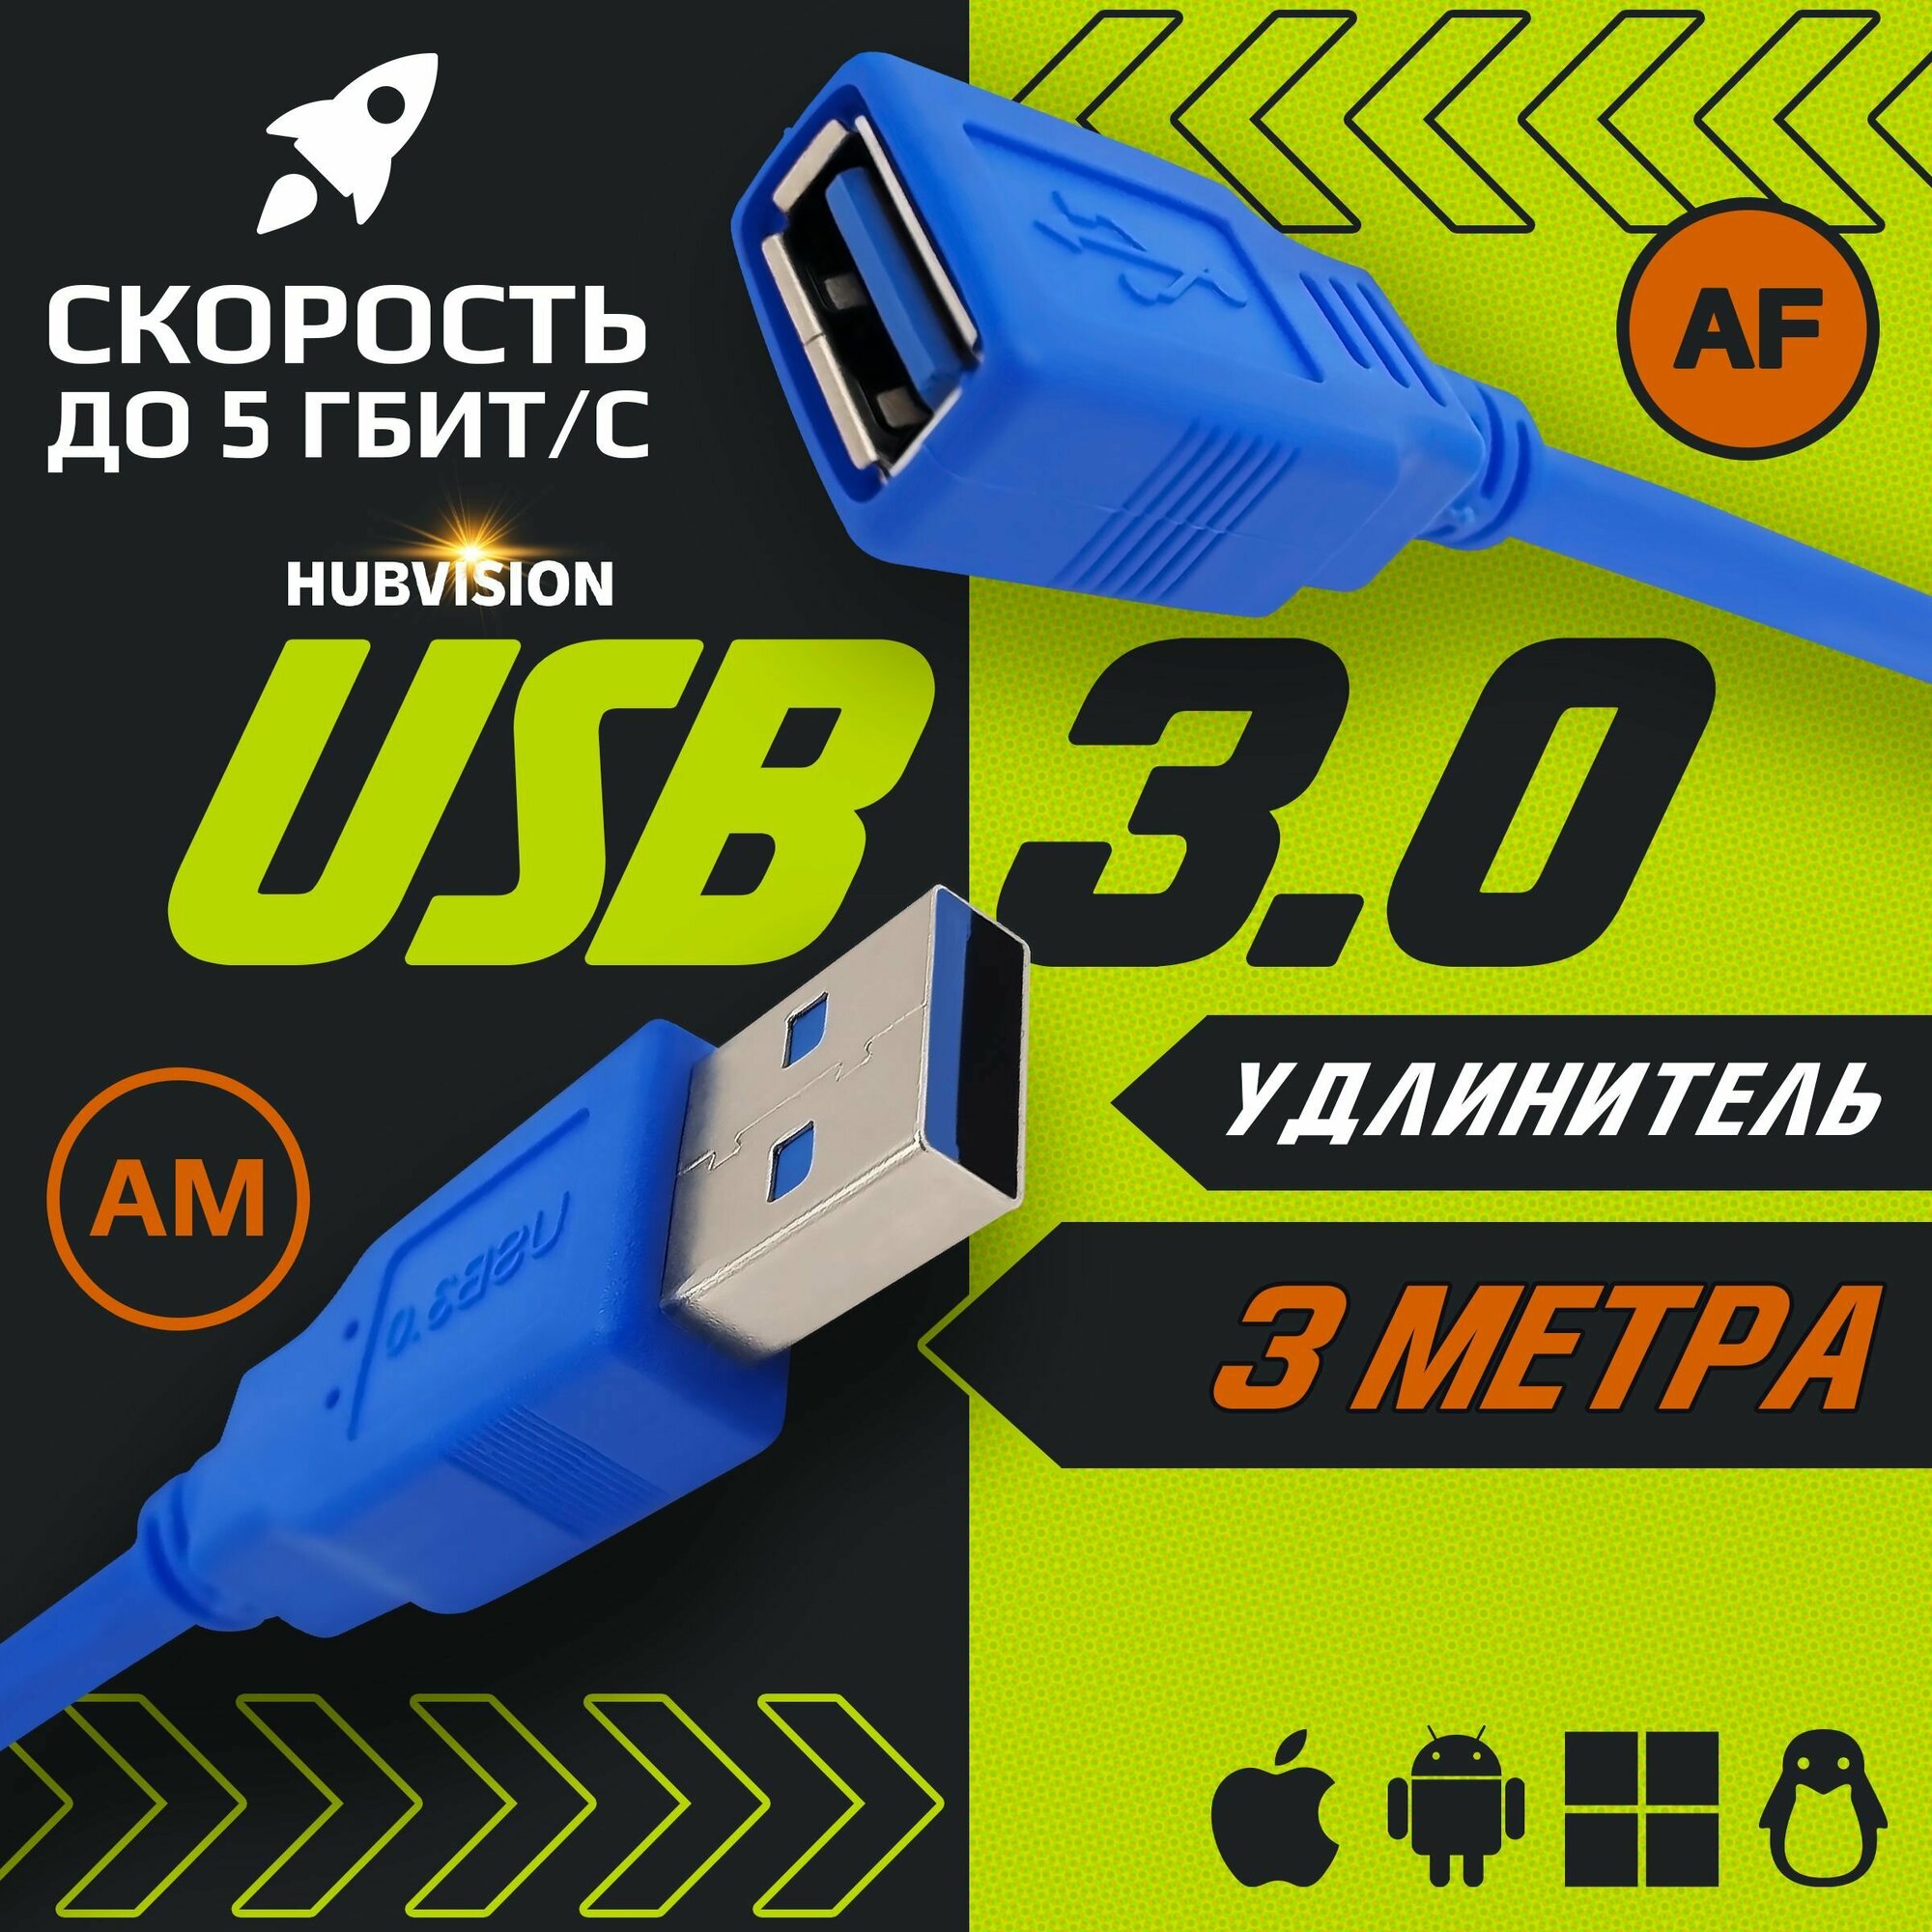 Кабель удлинитель USB 3.0 (AM-AF / папа-мама) 3 метра, синий